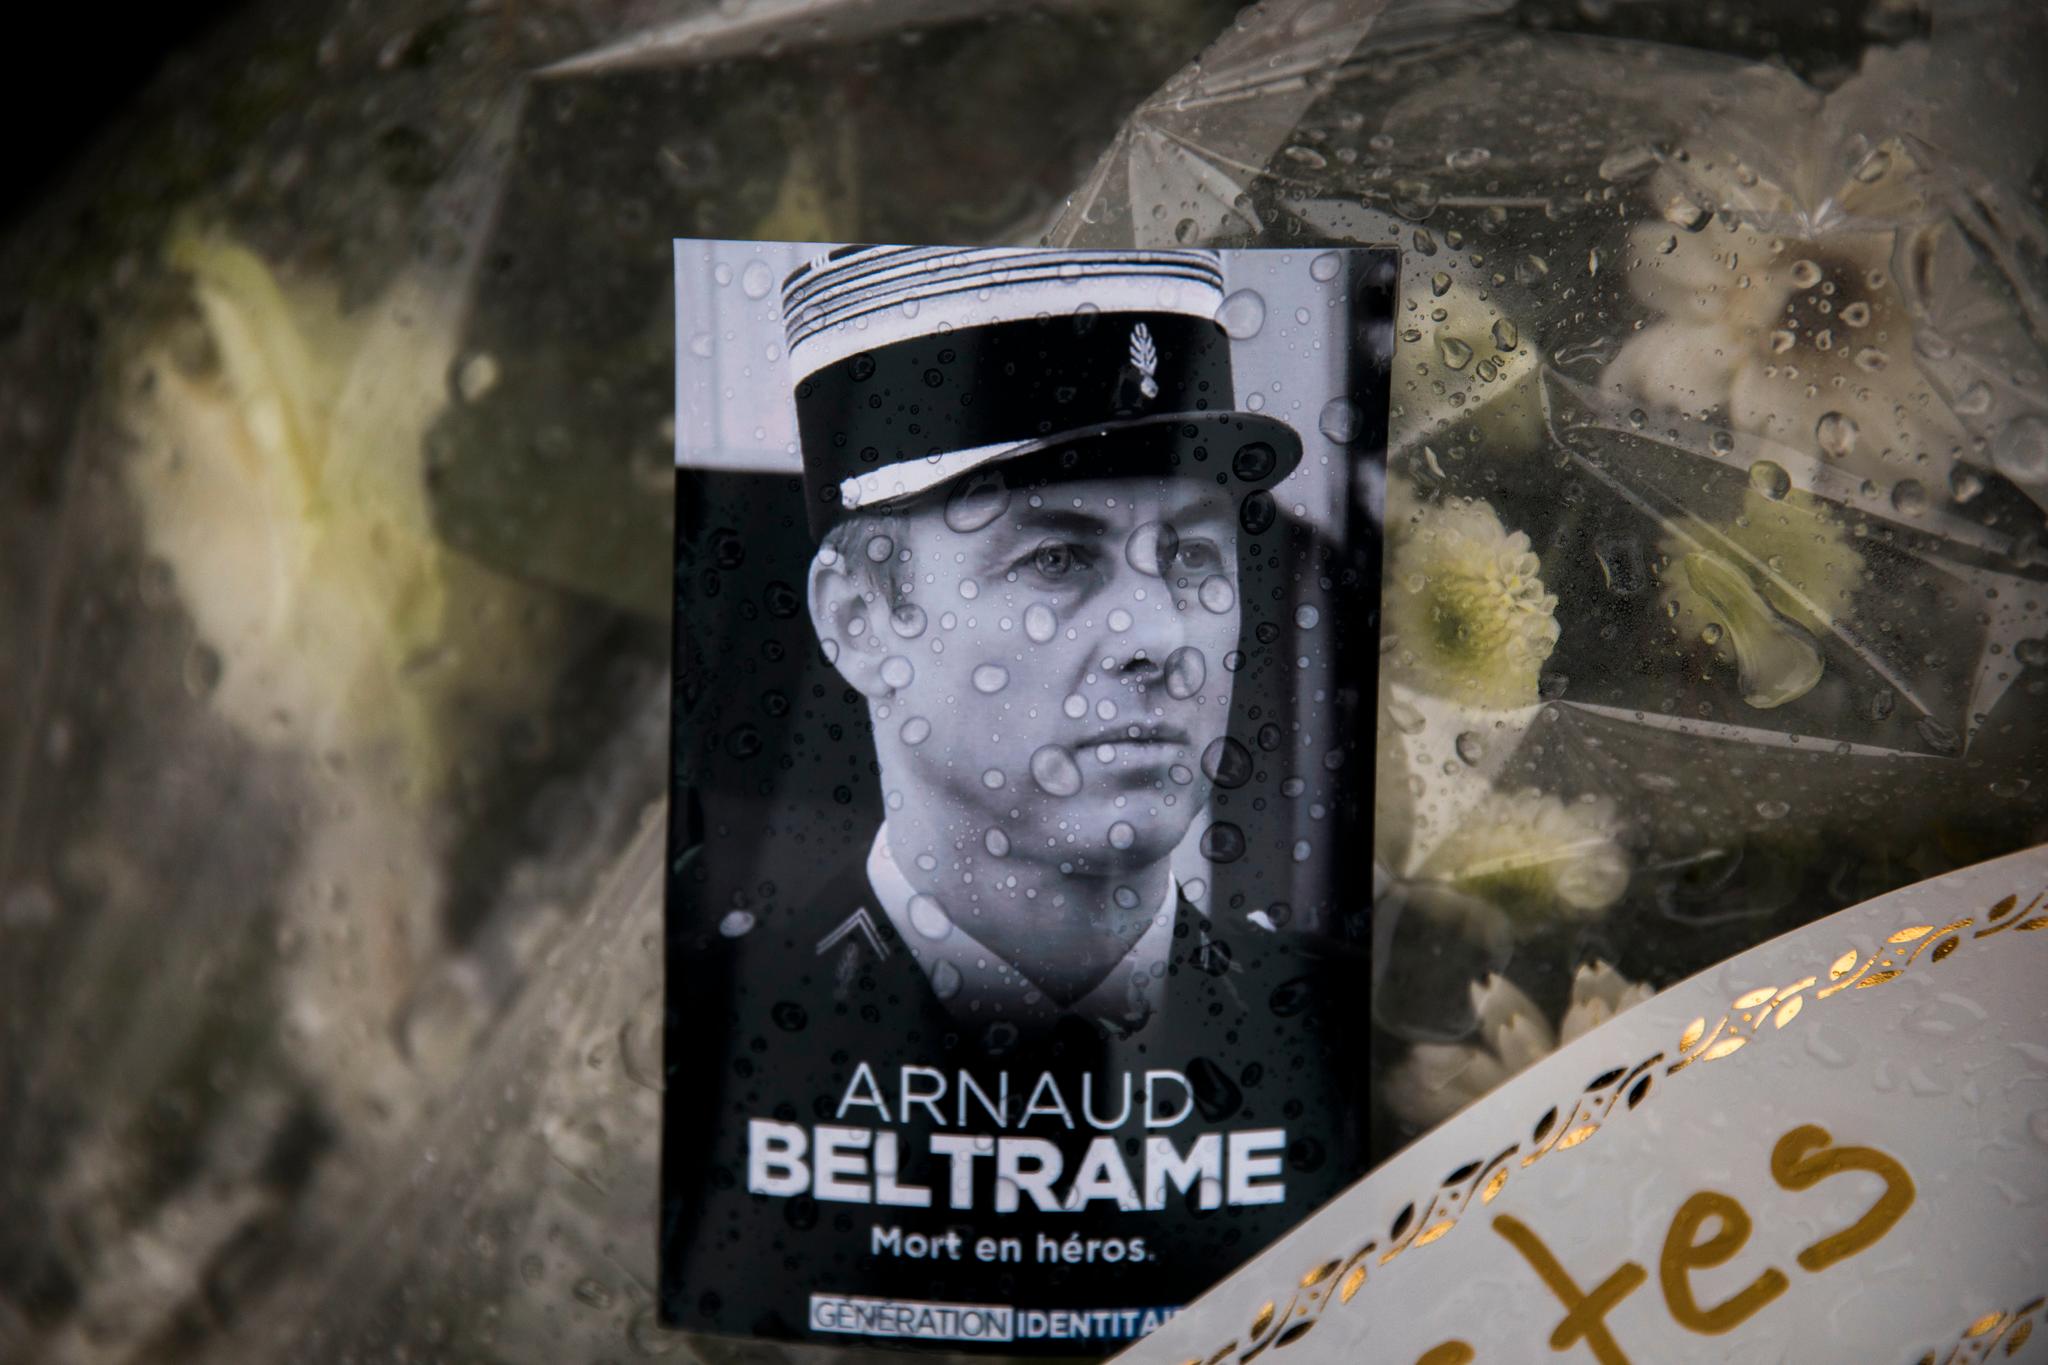 Arnaud Beltrame blir tildelt den militære æresbevisningen kommandør av Æreslegionen posthumt. 